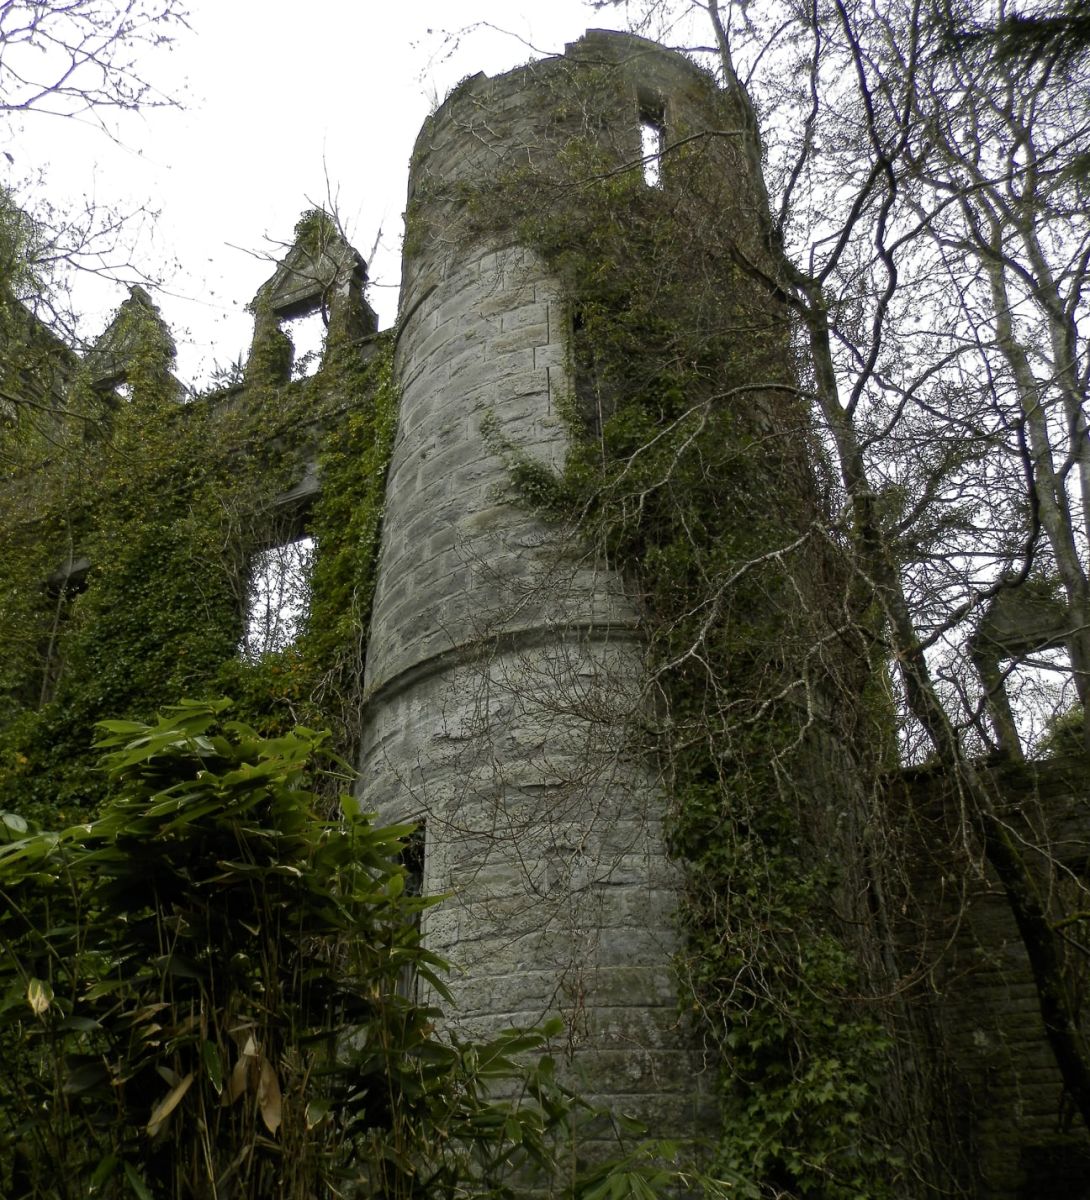 Buchanan Castle